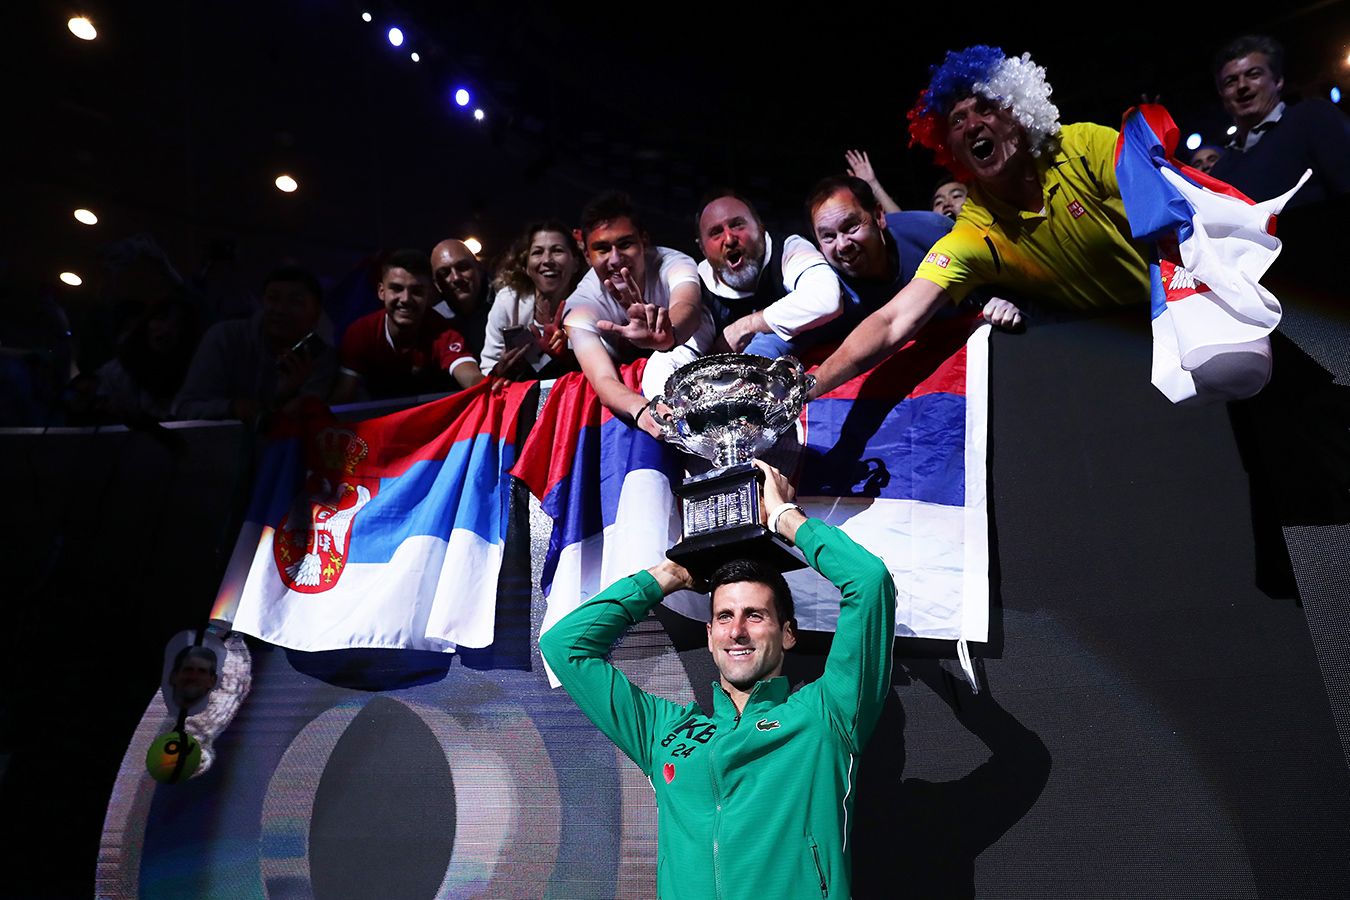 25 финалов Australian Open у мужчин, составляем рейтинг: Джокович, Федерер, Надаль, Медведев, Сафин, Агасси, Кафельников